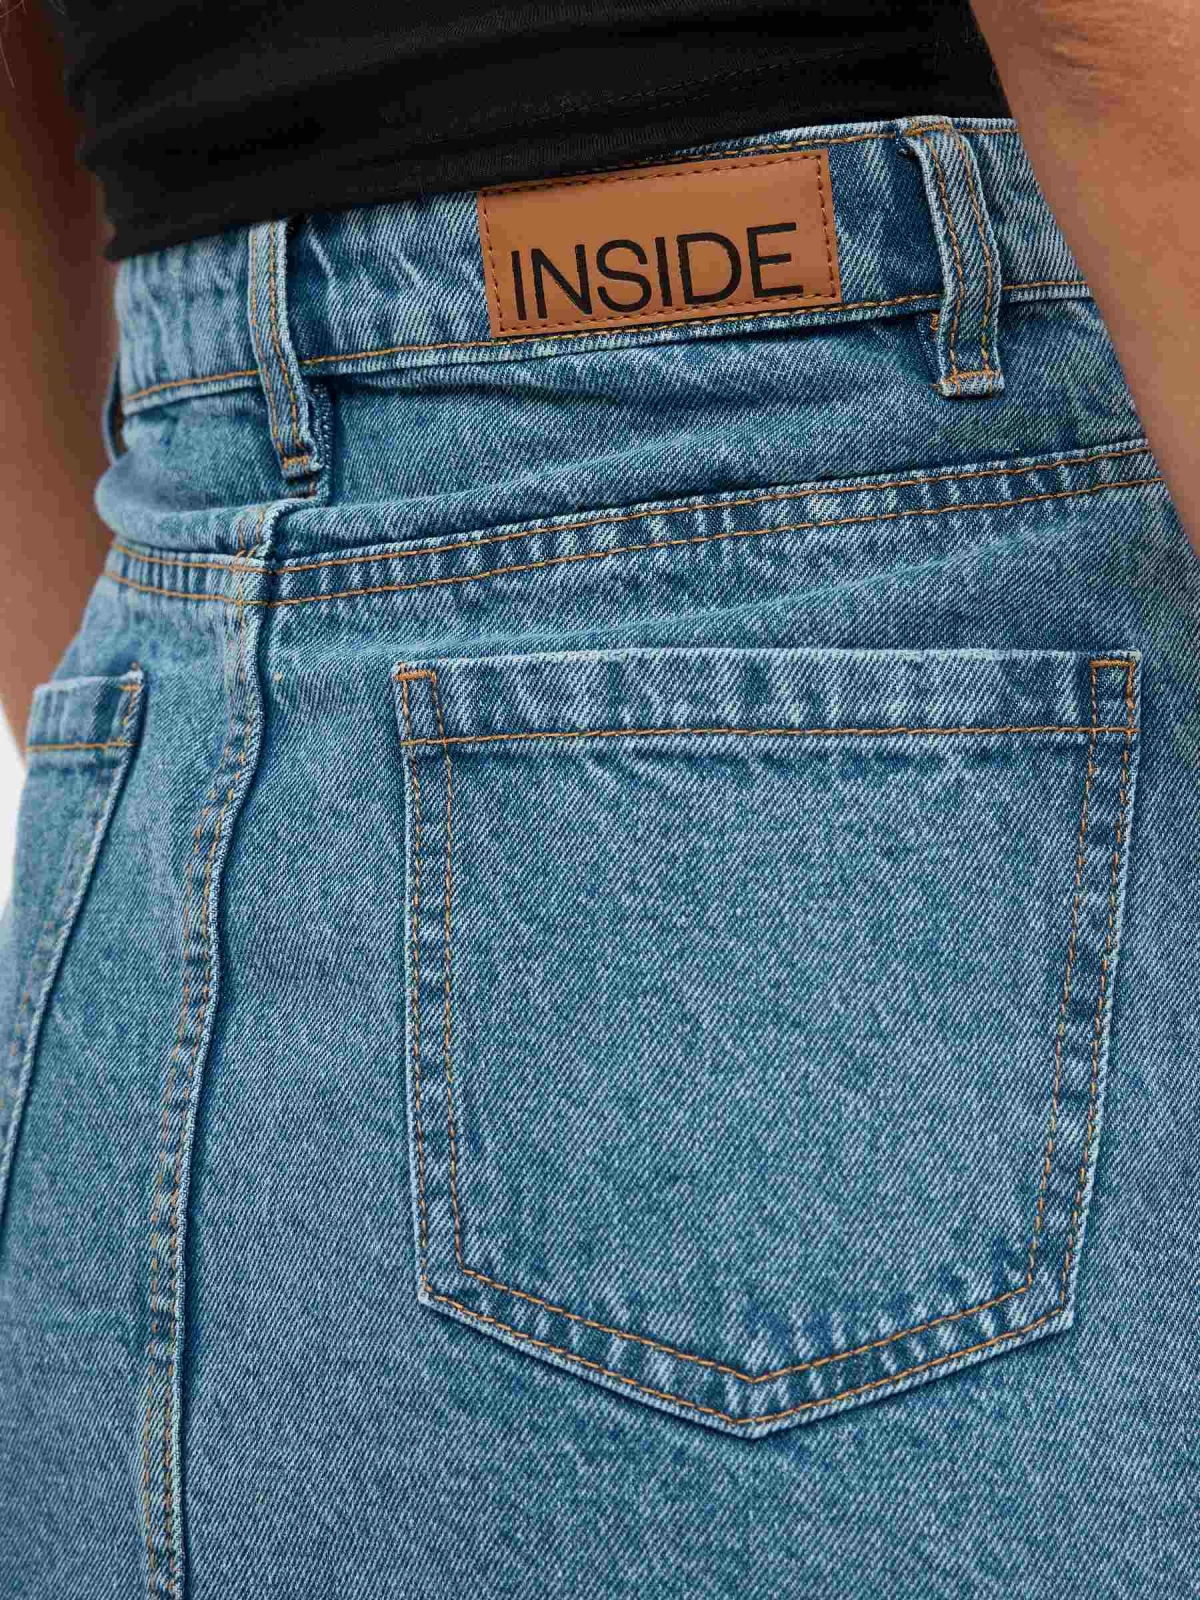 Falda mini denim deflecada azul vista detalle